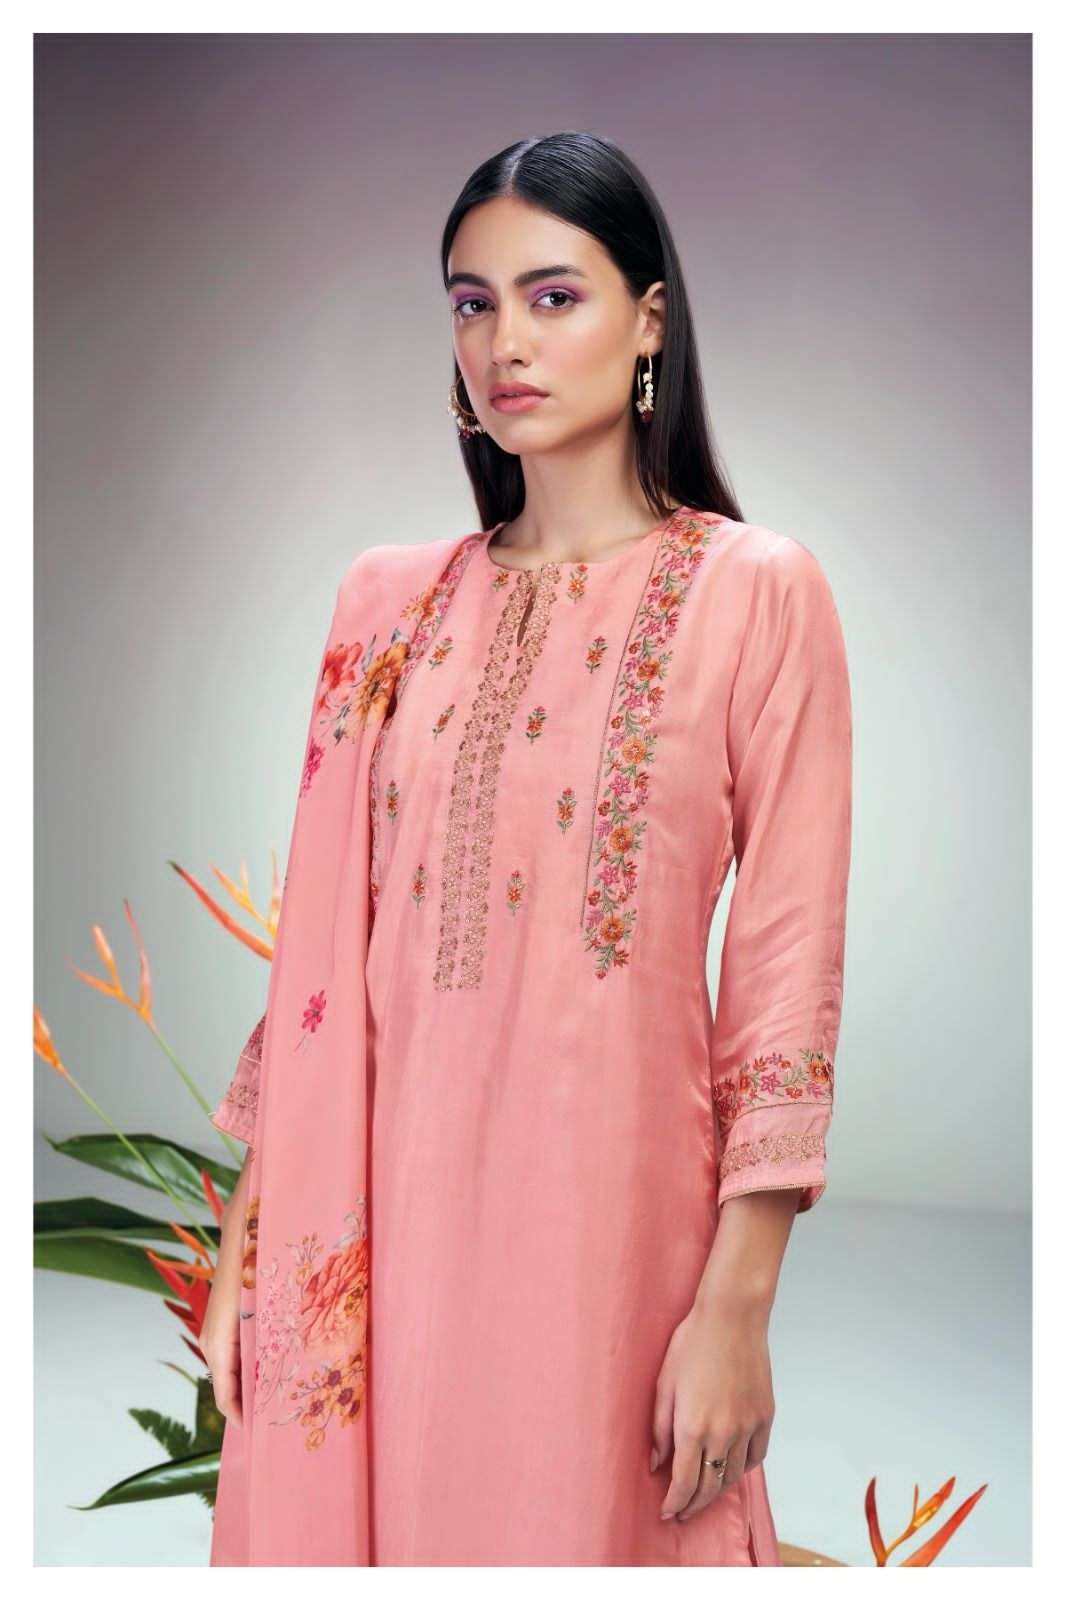 ganga milina 2207 colour series latest designer pakistani salwar kameez wholesaler surat gujarat